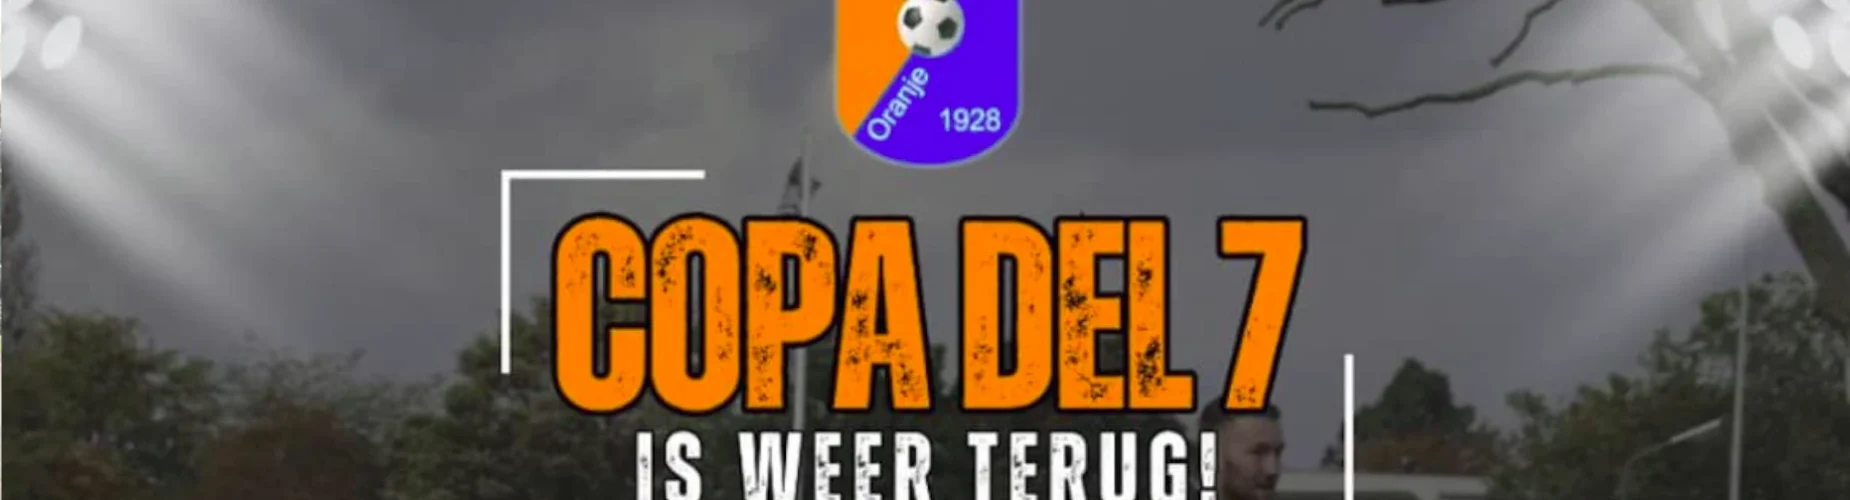 Banner - Copa del 7 Toernooi - CSV Oranje Blauw - Nijmegen